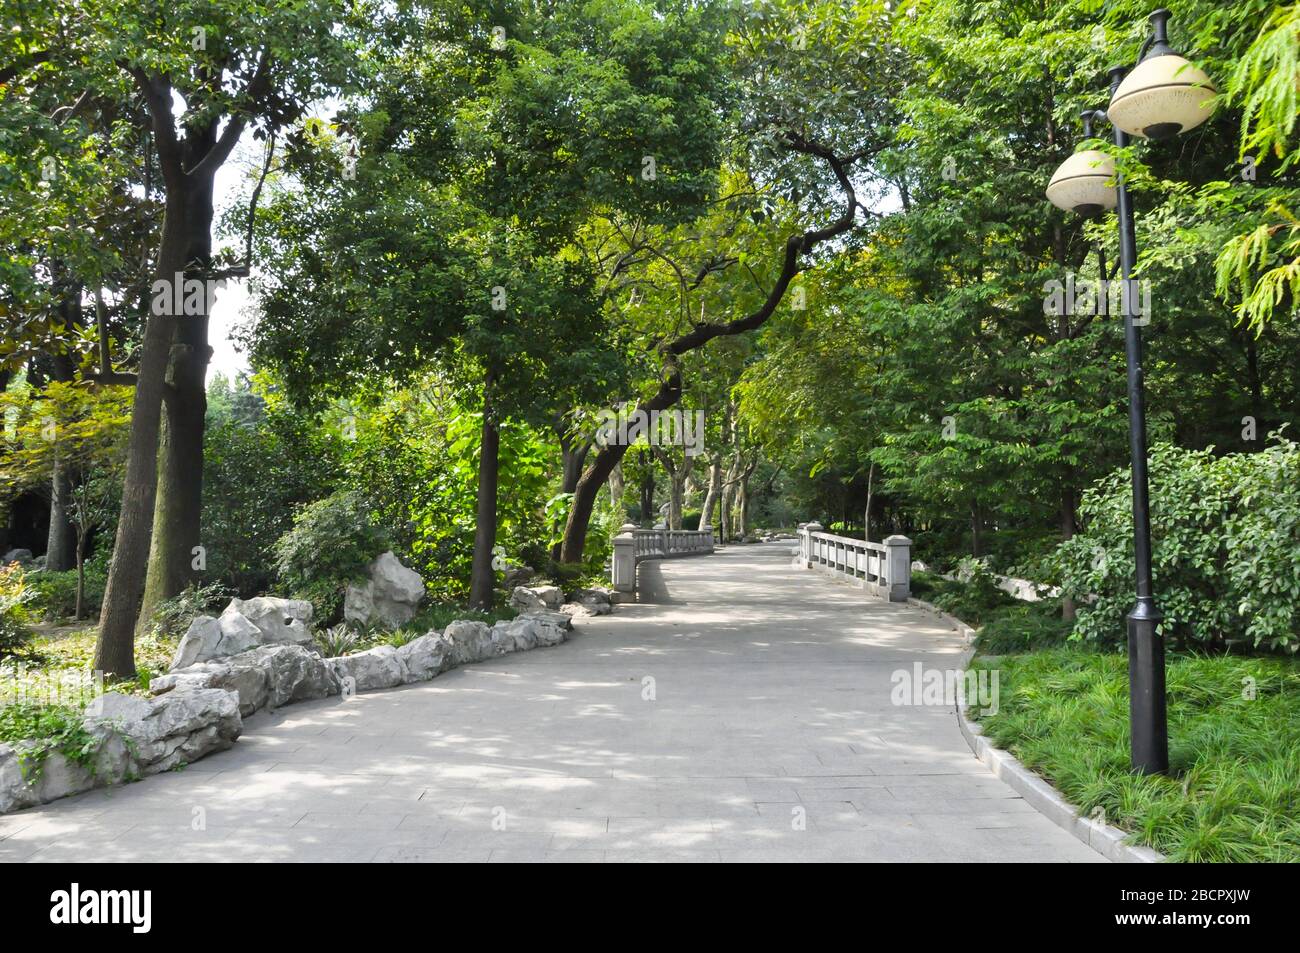 Un chemin concret à travers un parc dans la concession française à Shanghai, en Chine. Le chemin est entouré d'arbres et de lanternes et conduit à une petite br blanche Banque D'Images